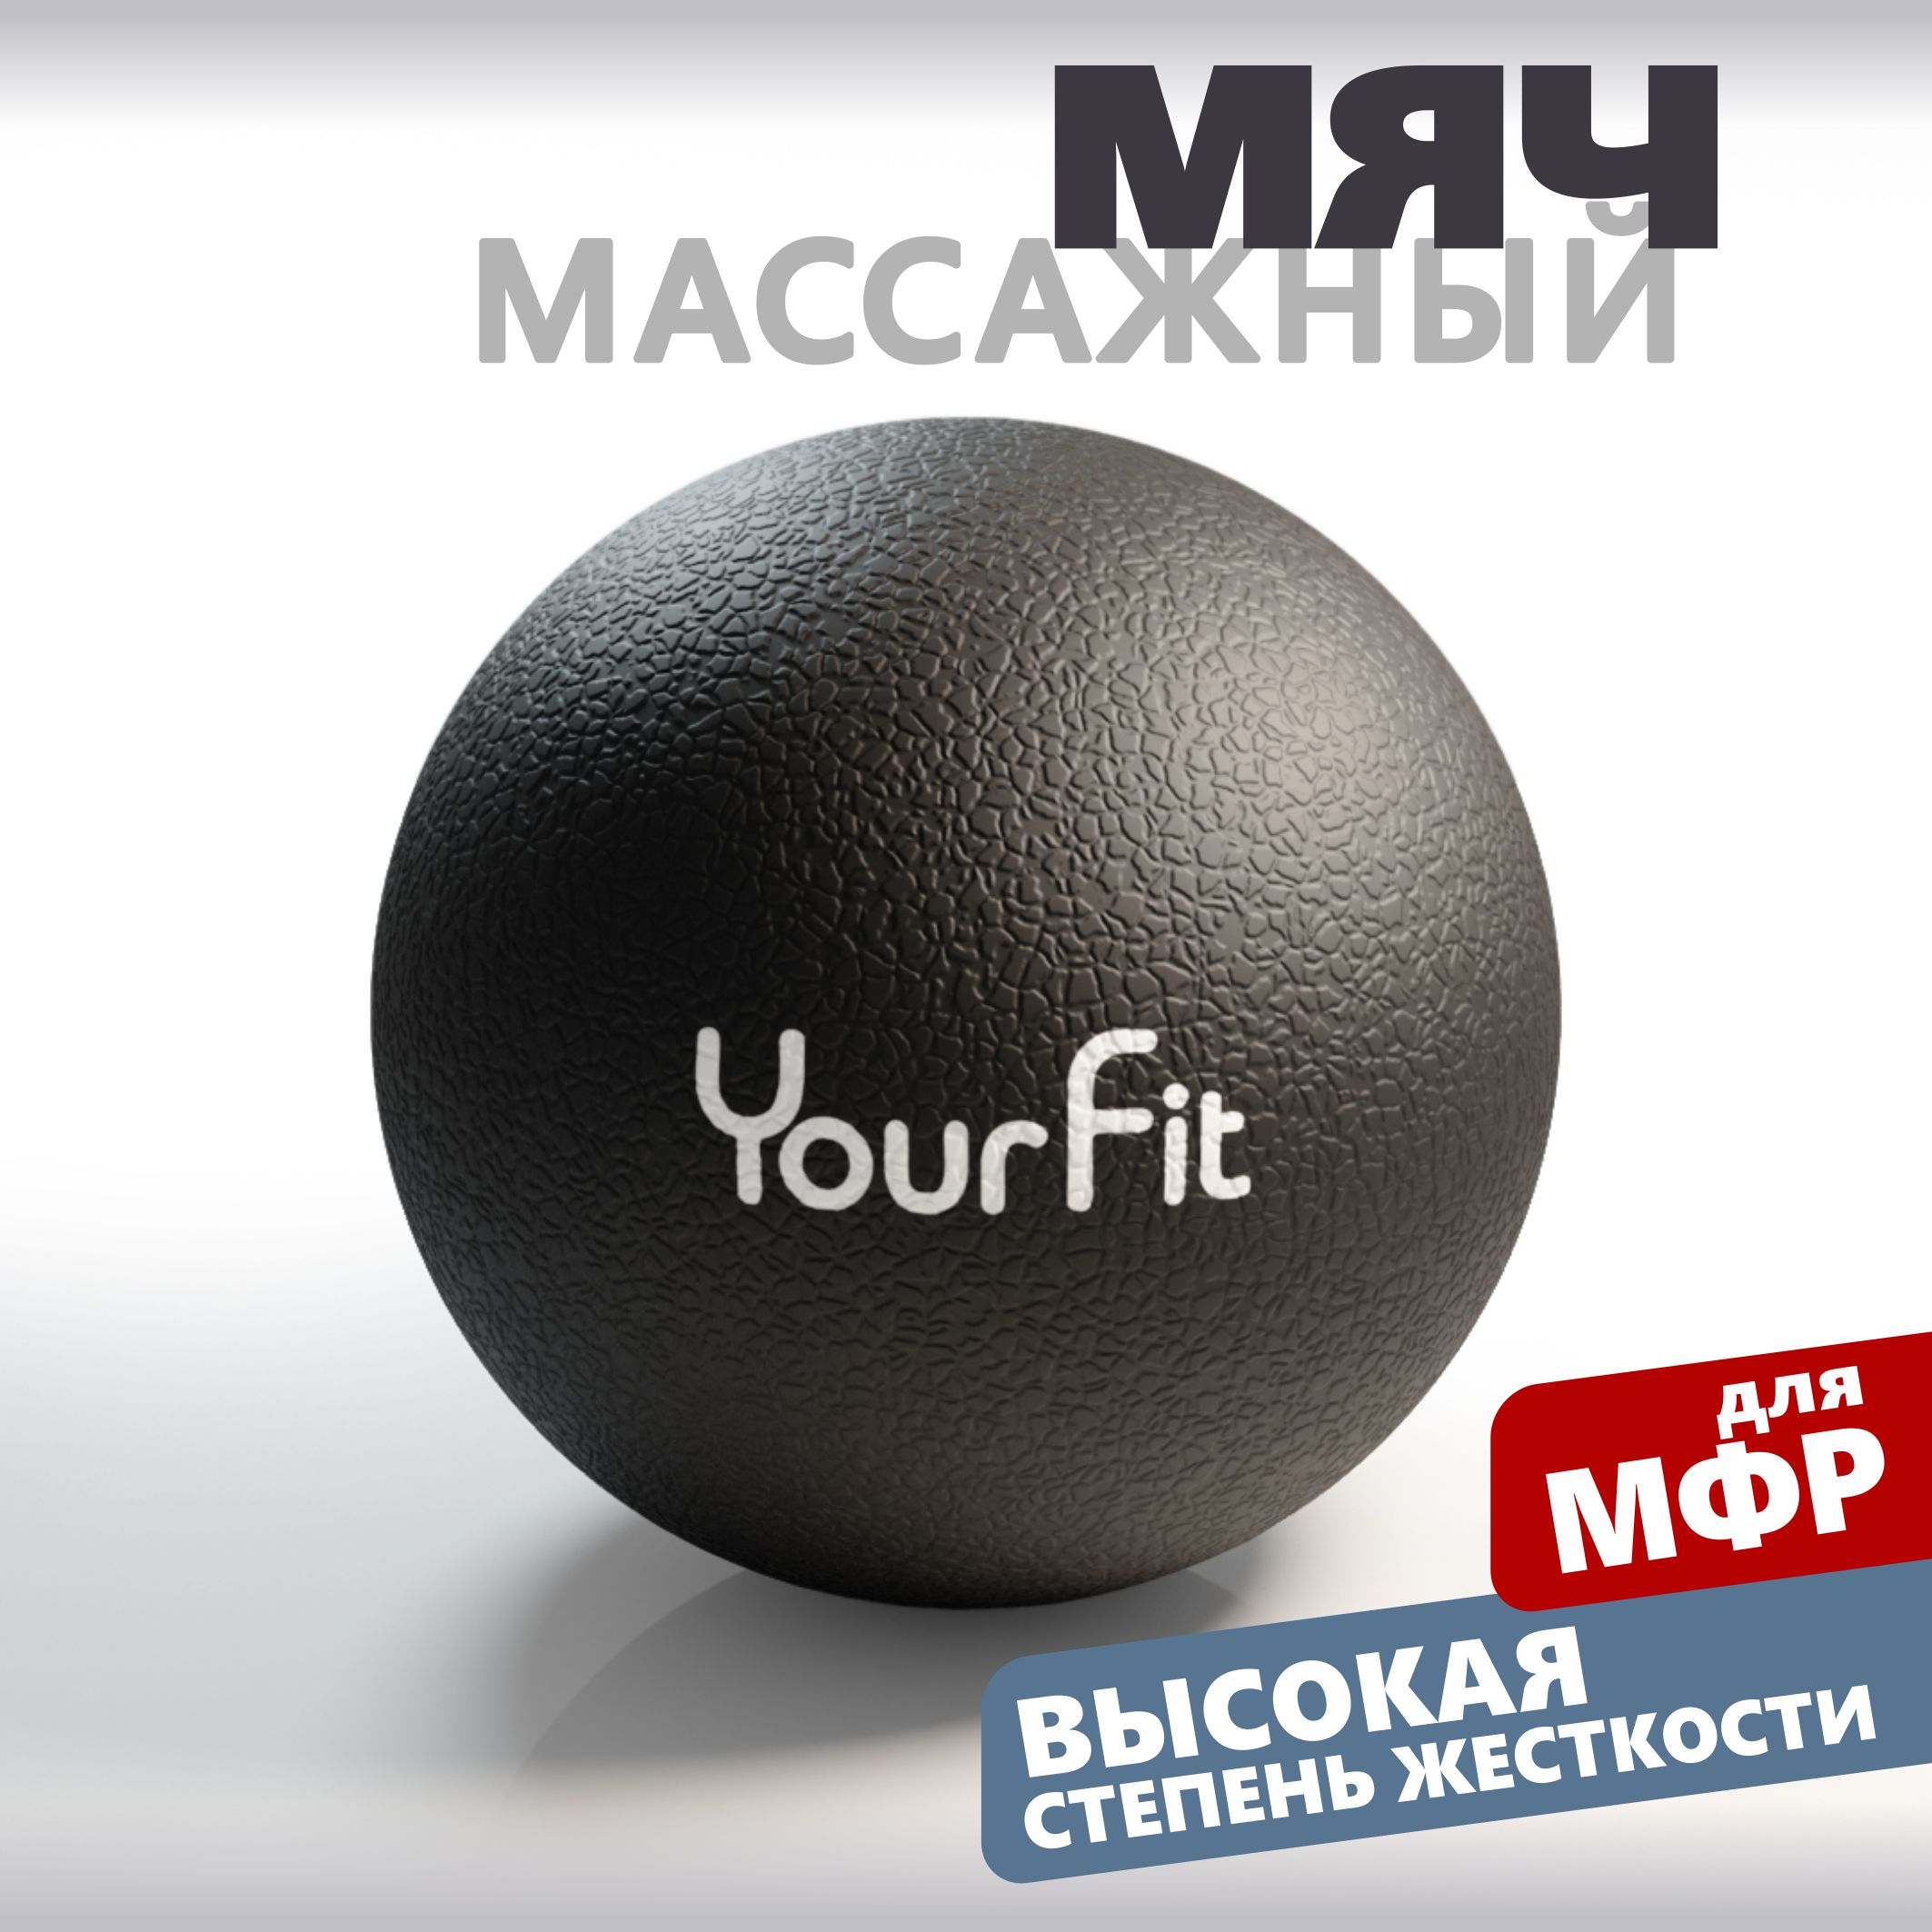 Массажный мяч YourFit ролик для мфр массажа черный 6 см